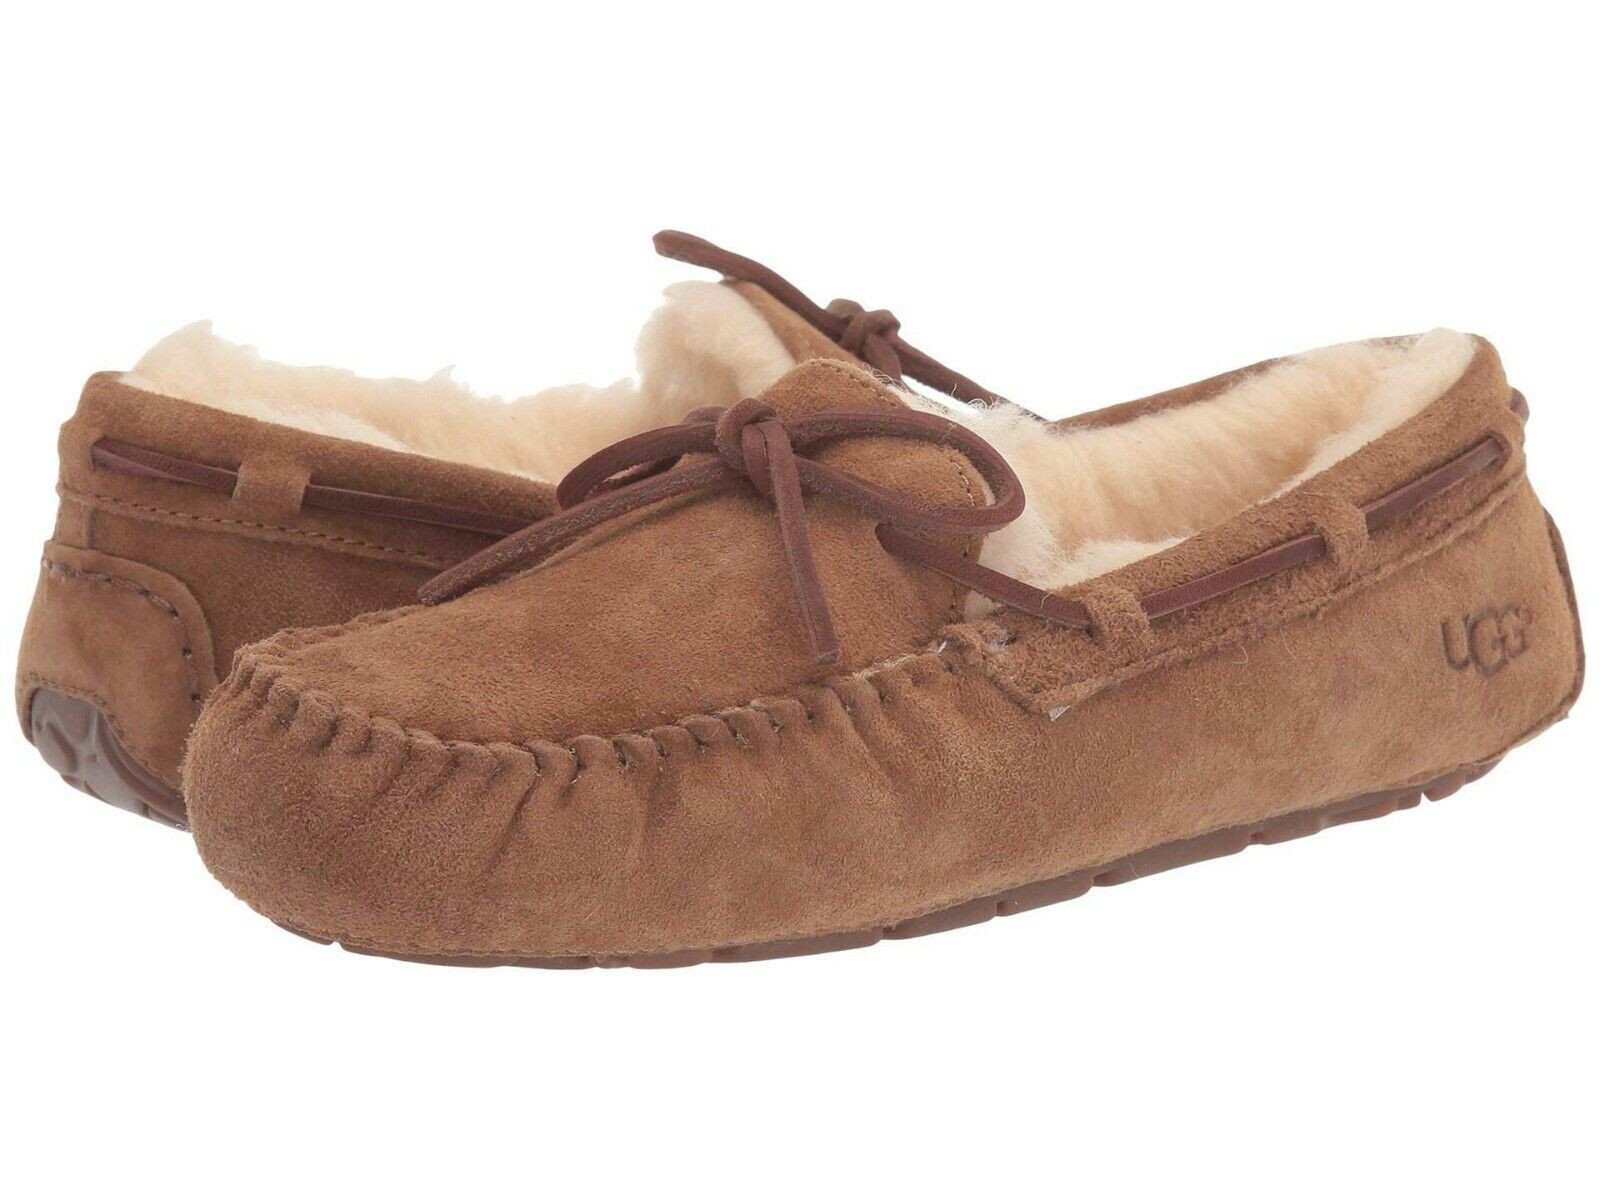 Women's Shoes UGG DAKOTA Suede Indoor/Outdoor Moccasin Slippers 1107949  CHESTNUT | eBay